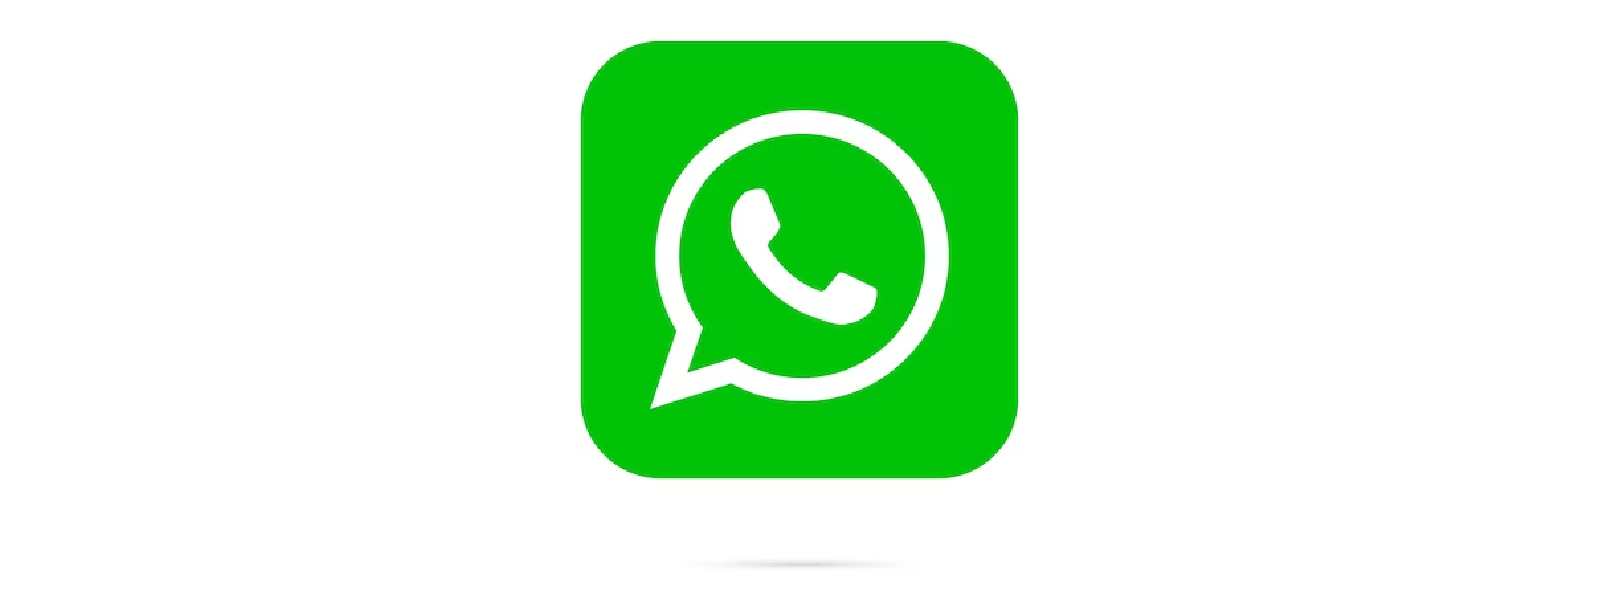 WhatsApp ‘Status’ changes to ‘Updates’